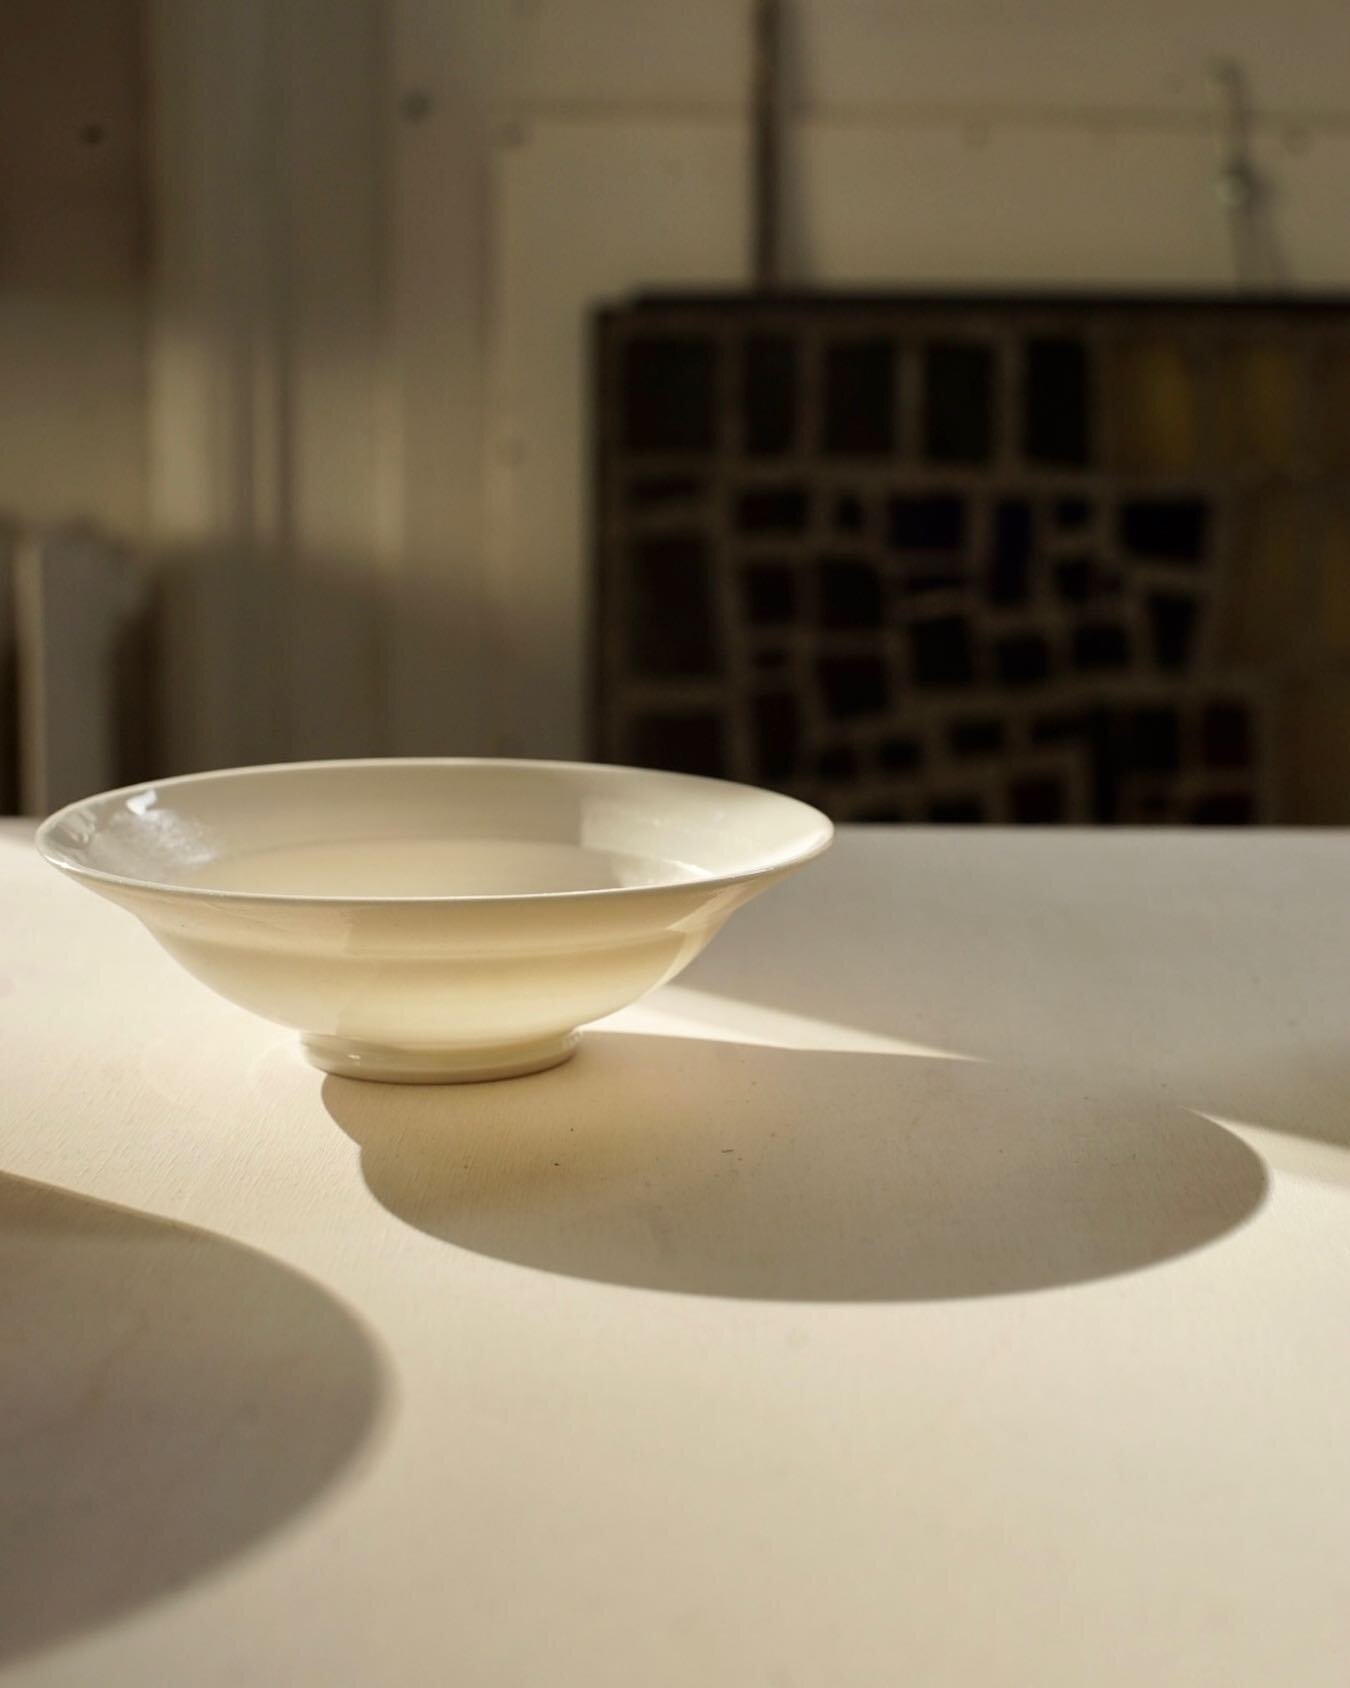 Leuchtend mit ein wenig Sonnenstrahlen. 

#porzellan #ceramics #keramik #handgemacht #zurich #shine #strahlen #studio #artstudio